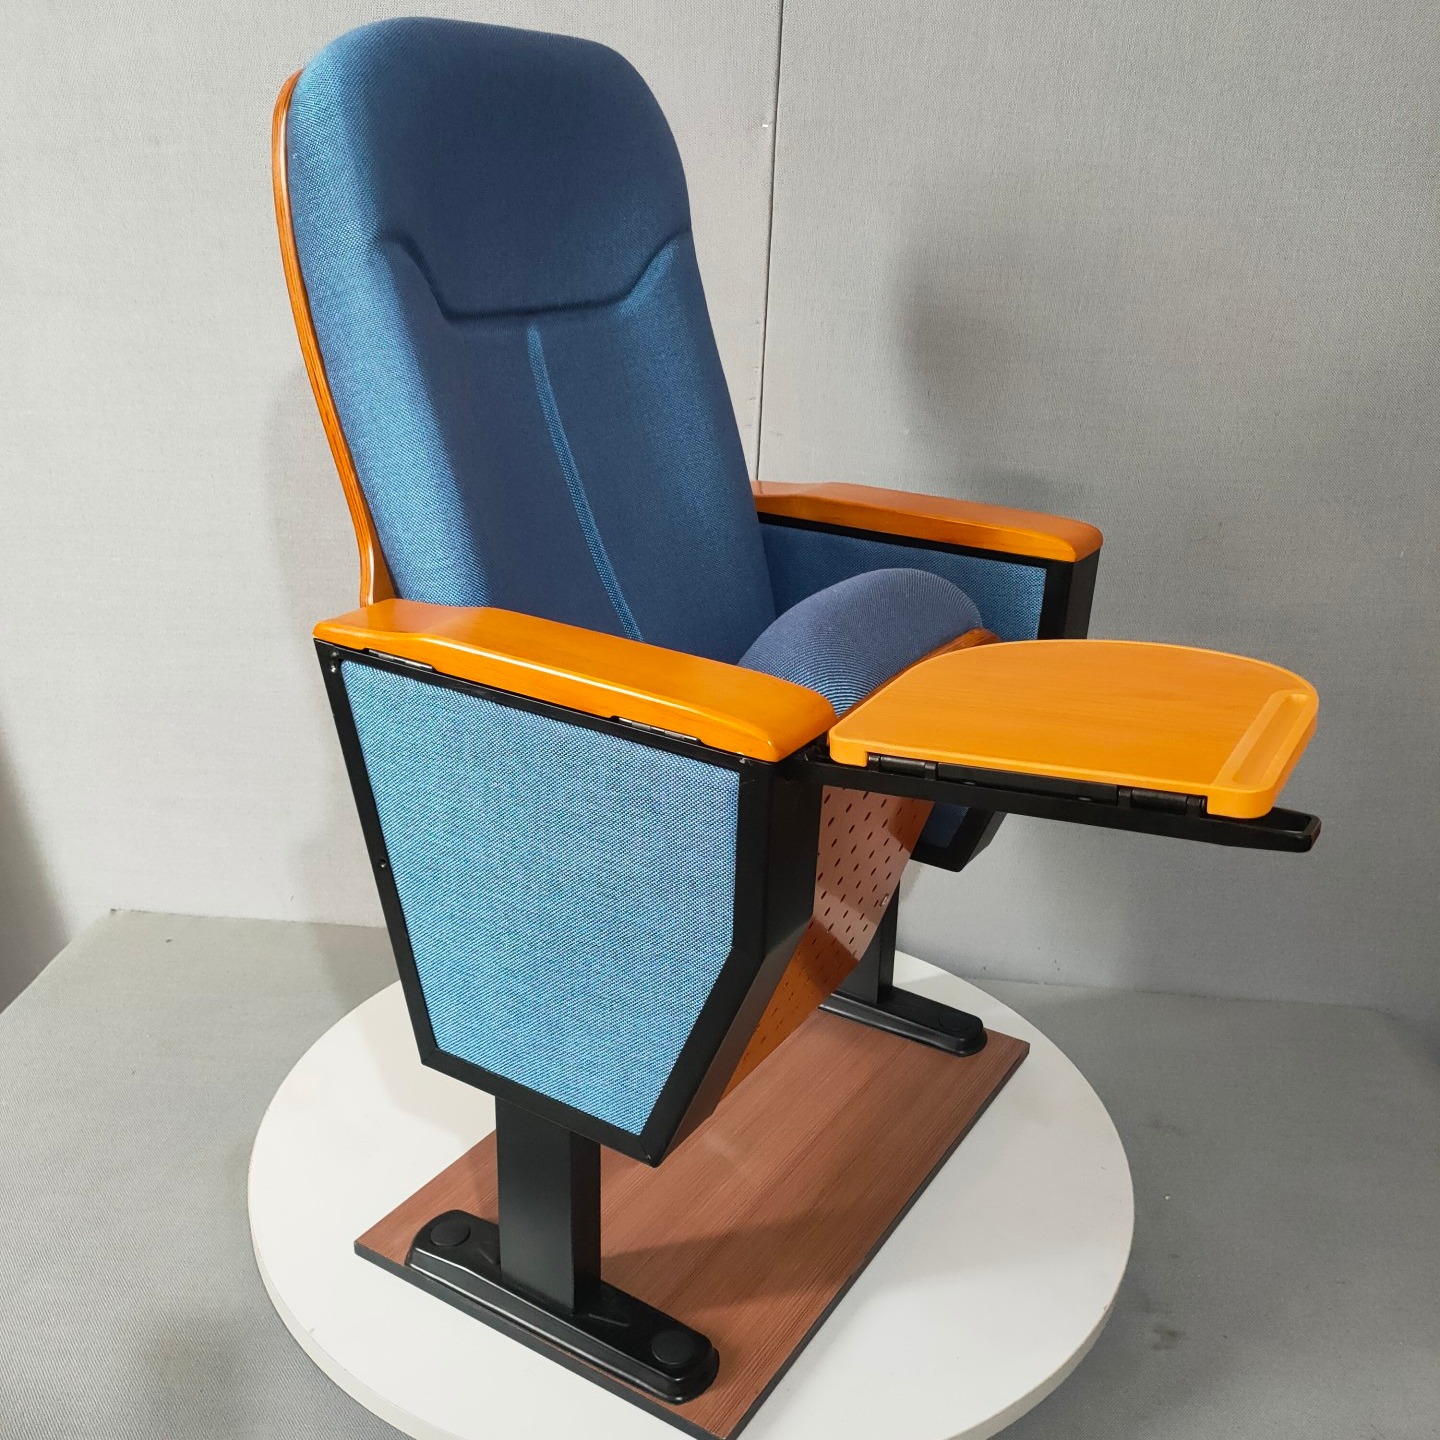 佛山阶梯教室座椅 联排软包座椅 项目配套工程做工精细物美价廉精品工艺JY-628